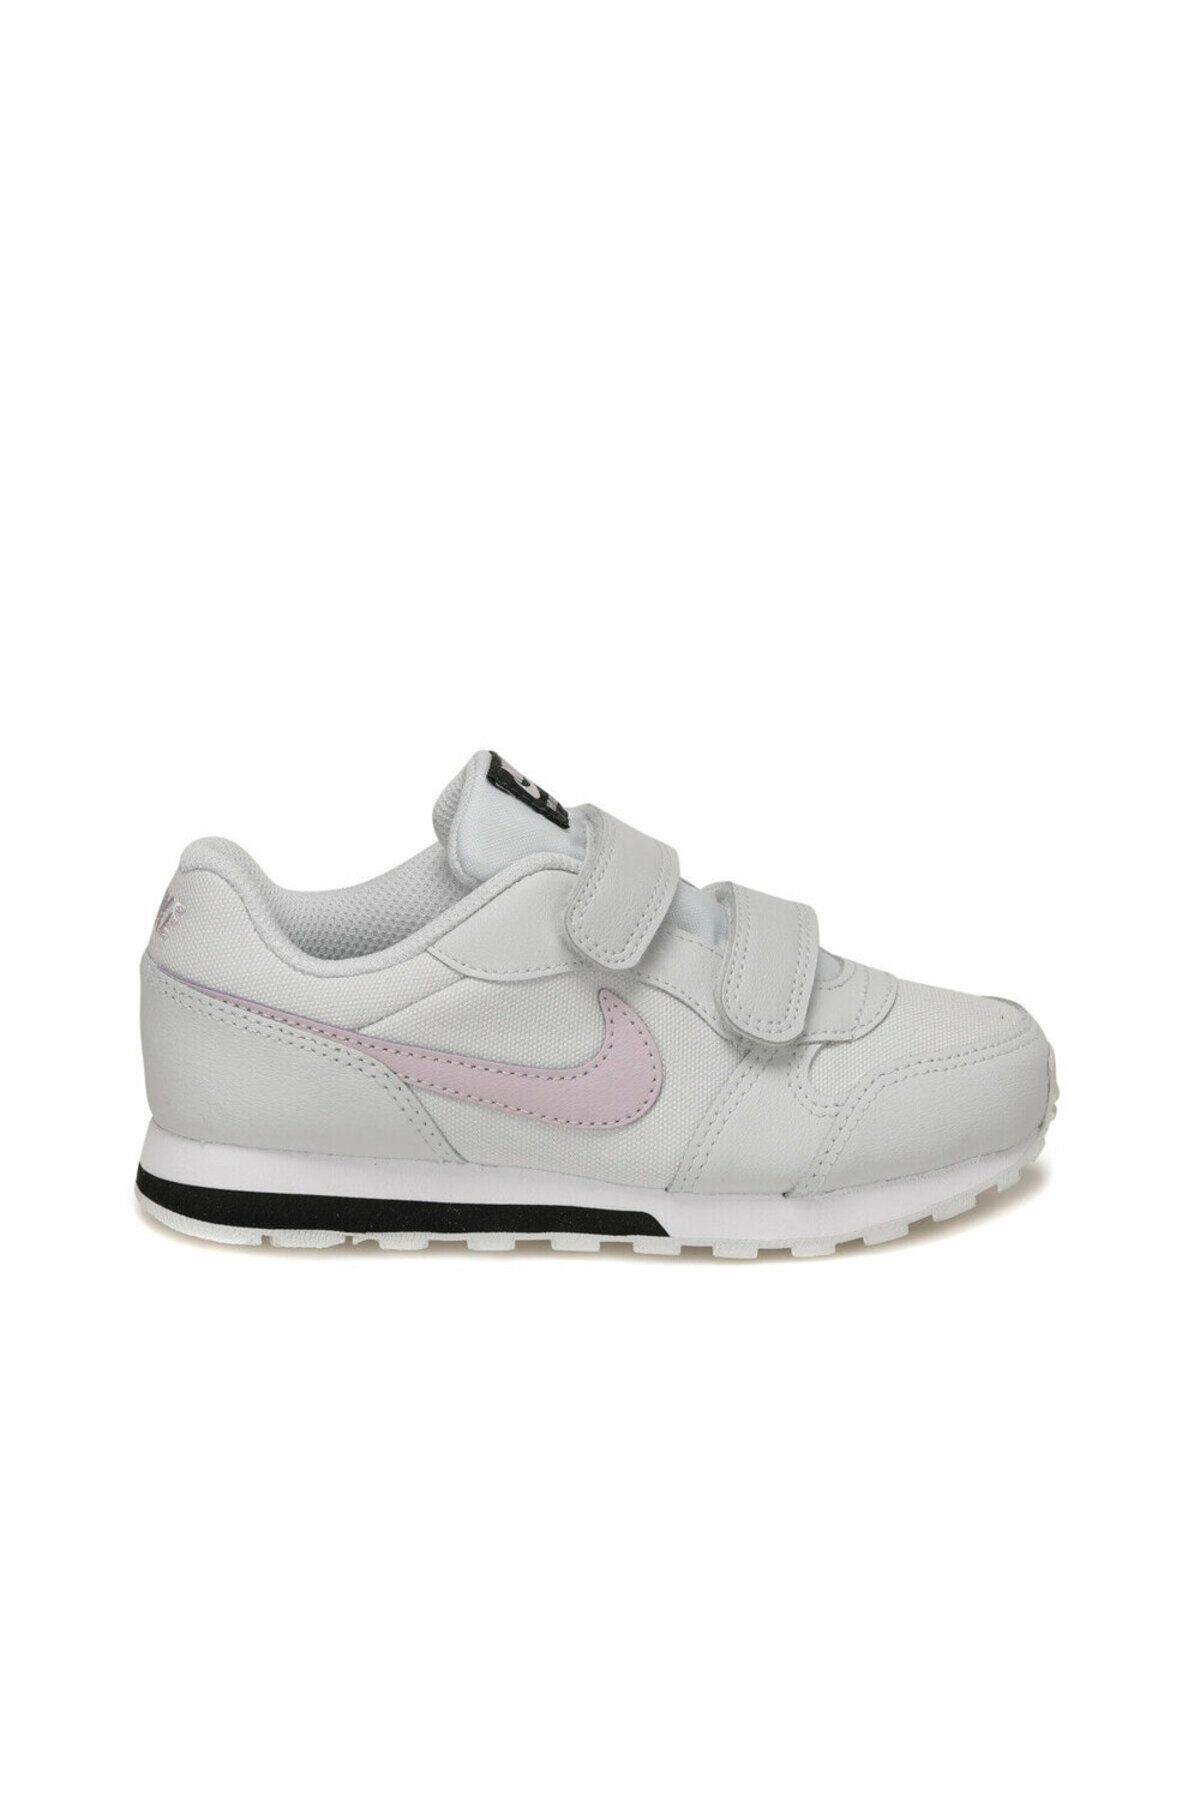 Nike Gri Çocuk Terlik/sandalet 807317-019-gri